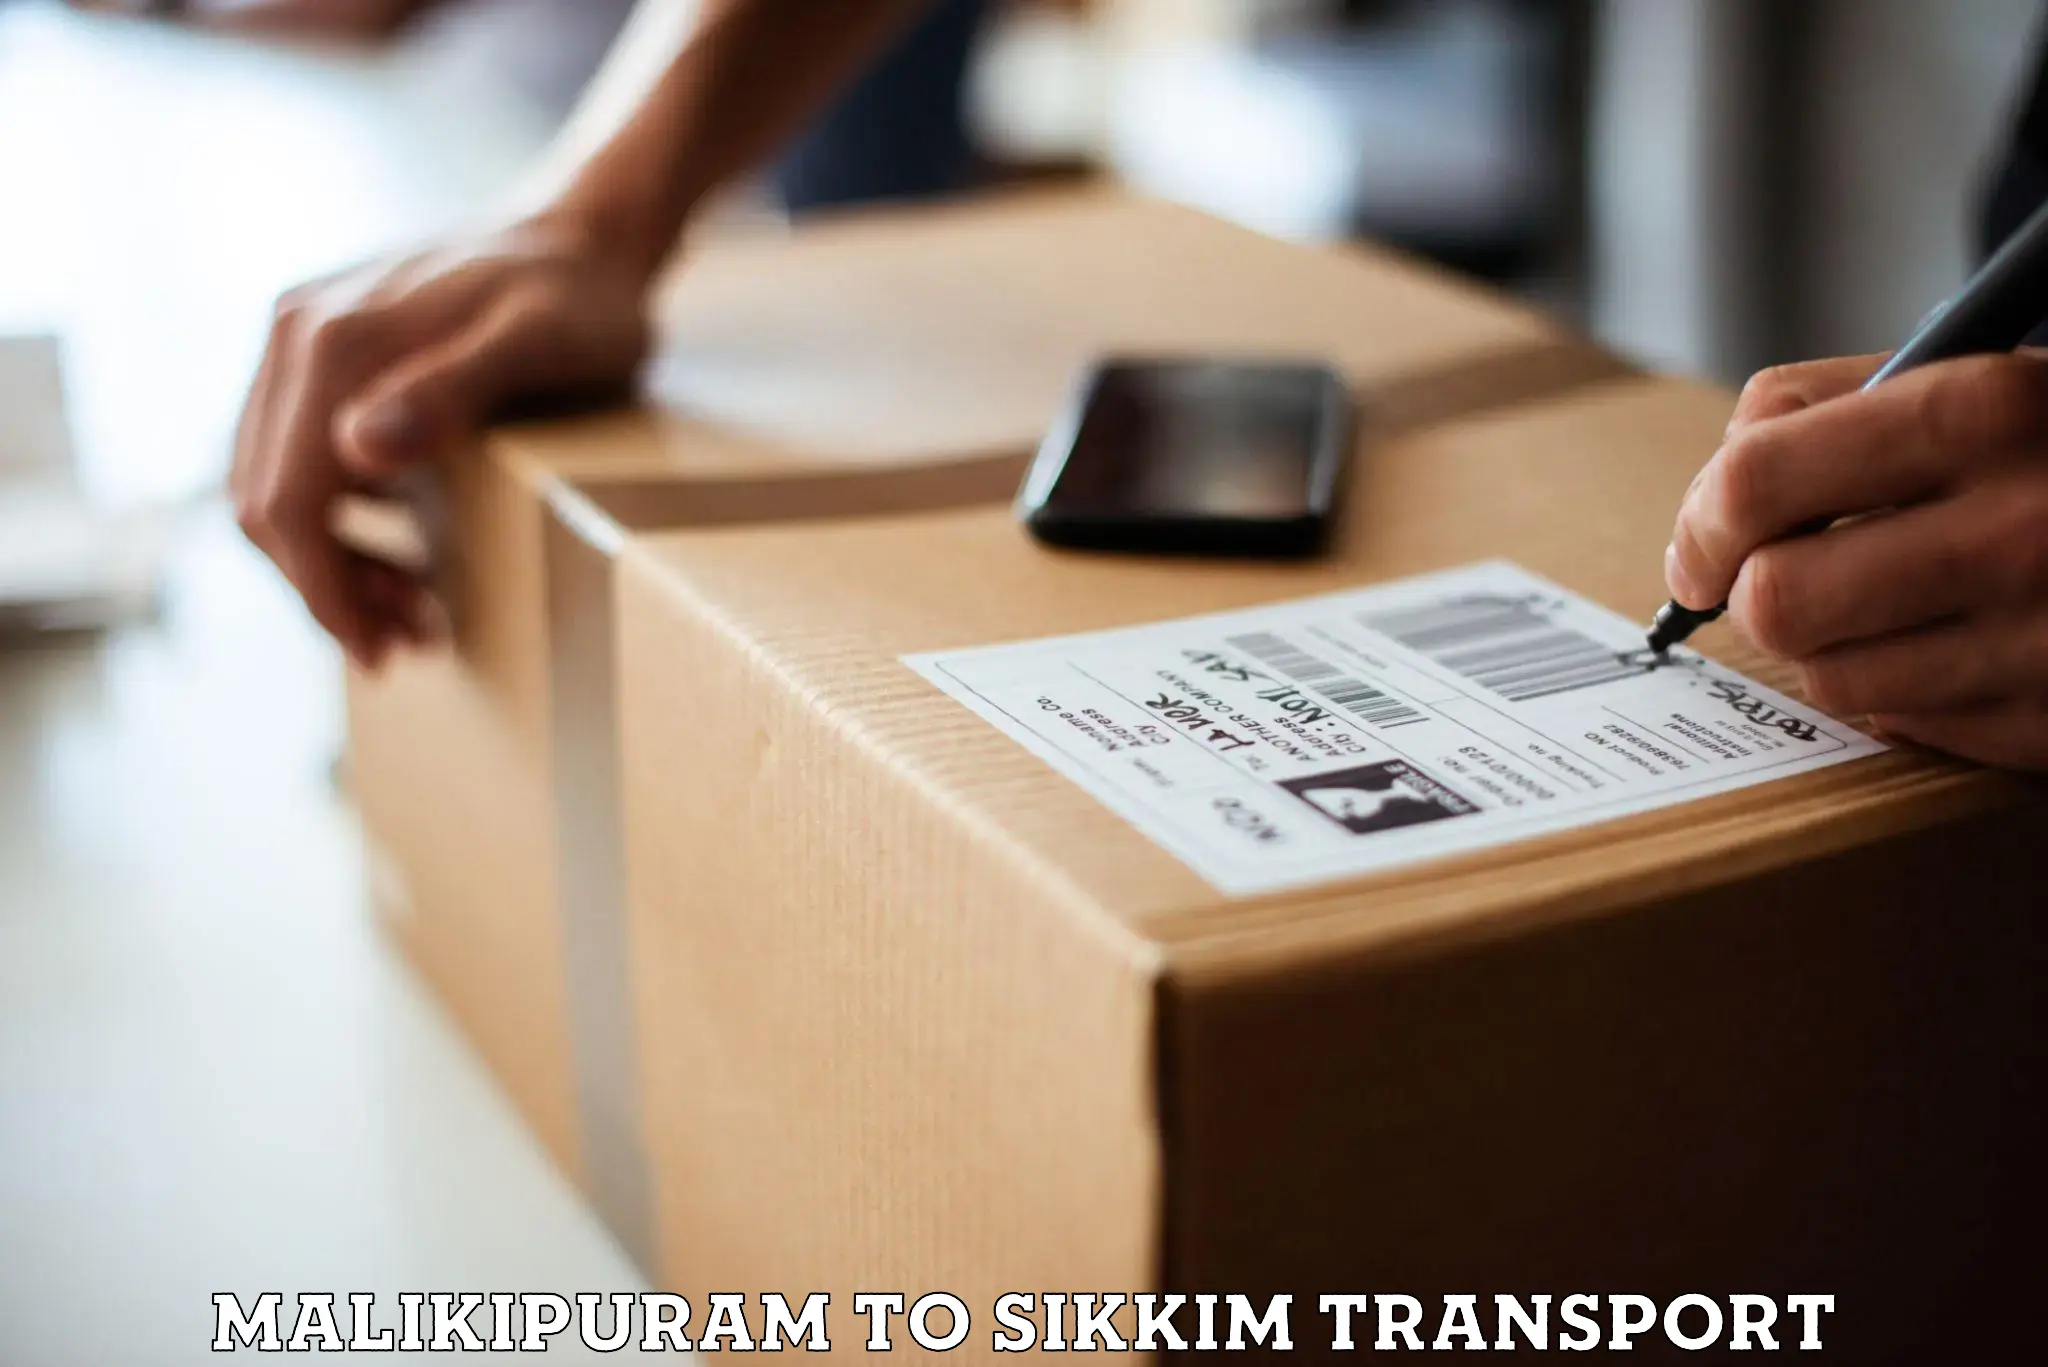 Two wheeler parcel service Malikipuram to Pelling